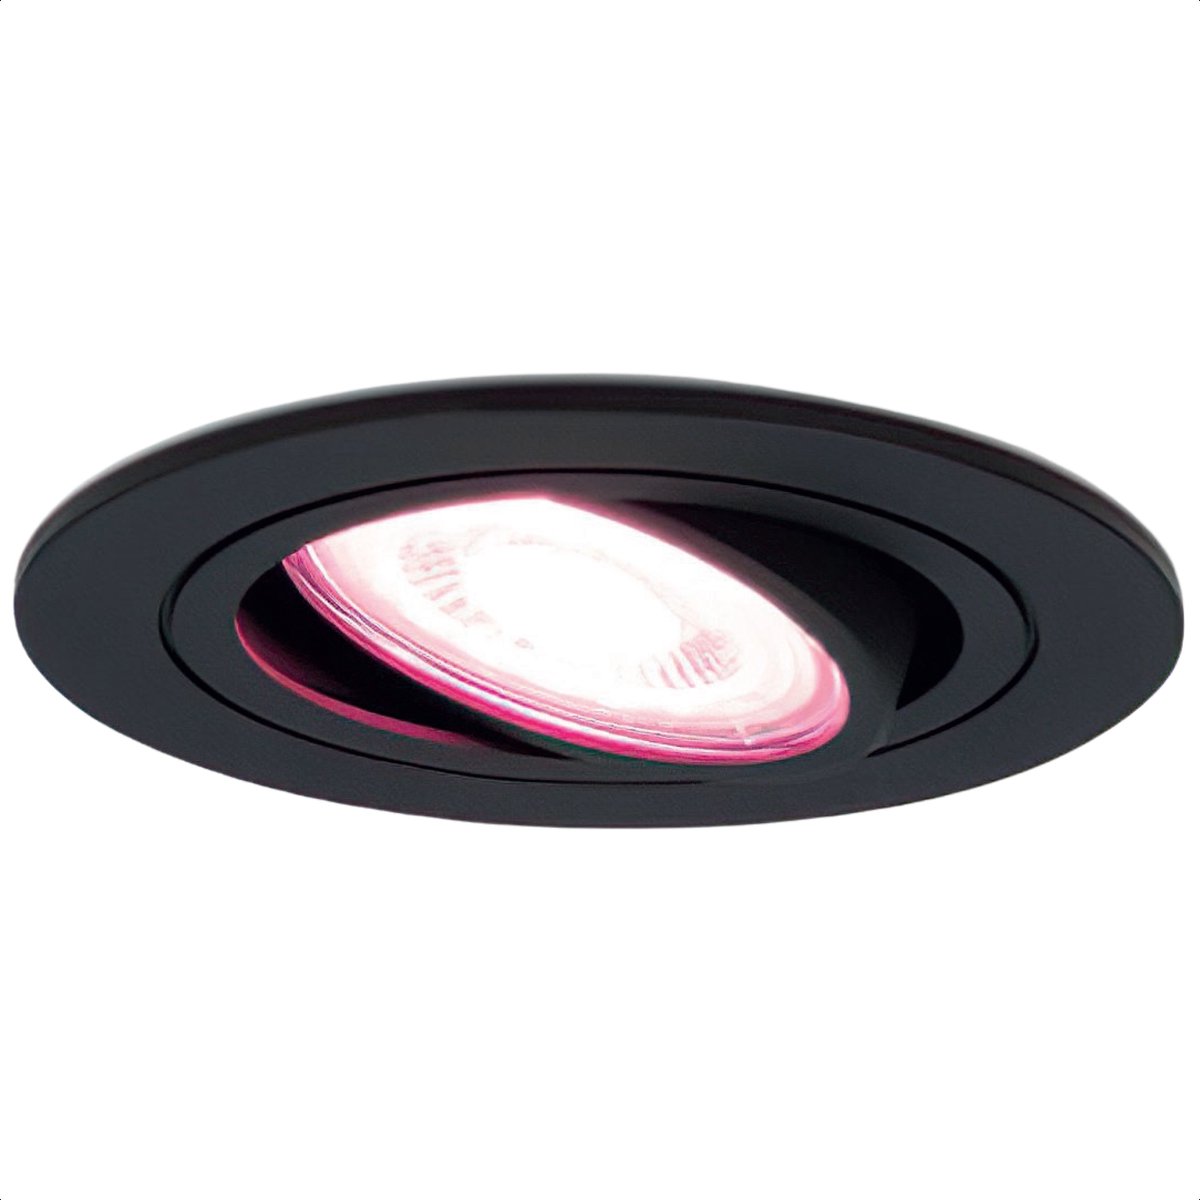 Gologi Slimme Inbouwspots - Smart LED Downlight Dimbaar - Kantelbaar - RGB+CCT Licht - Gu10 LED Lamp - Zwart